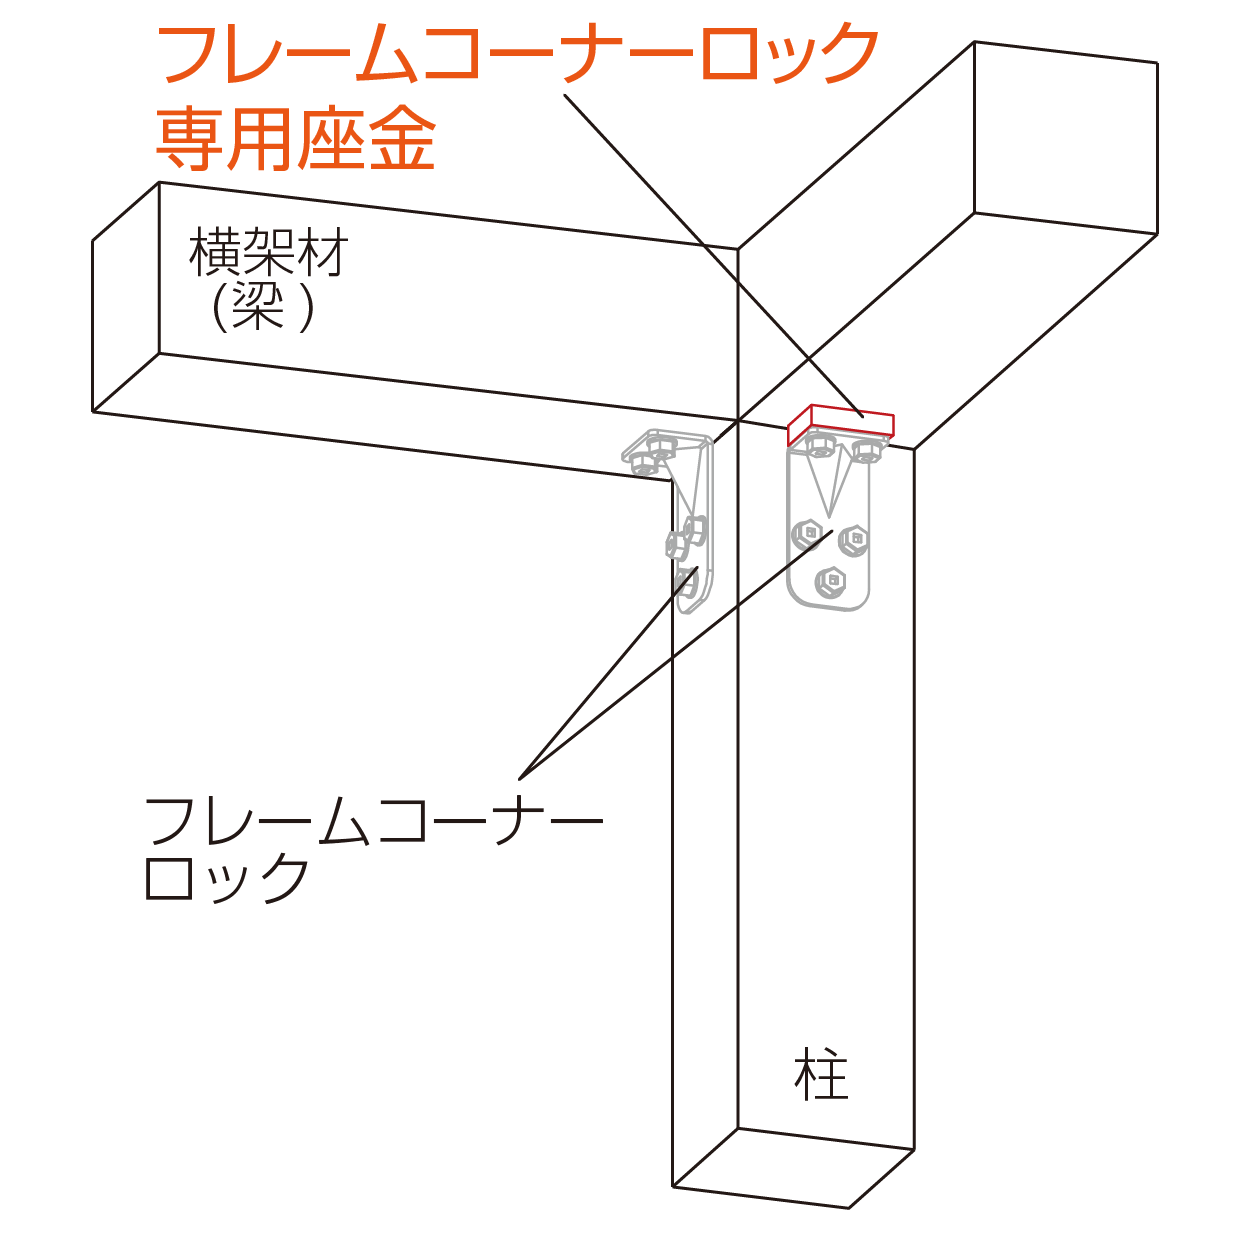 フレームコーナーロック専用座金 柱頭使用例